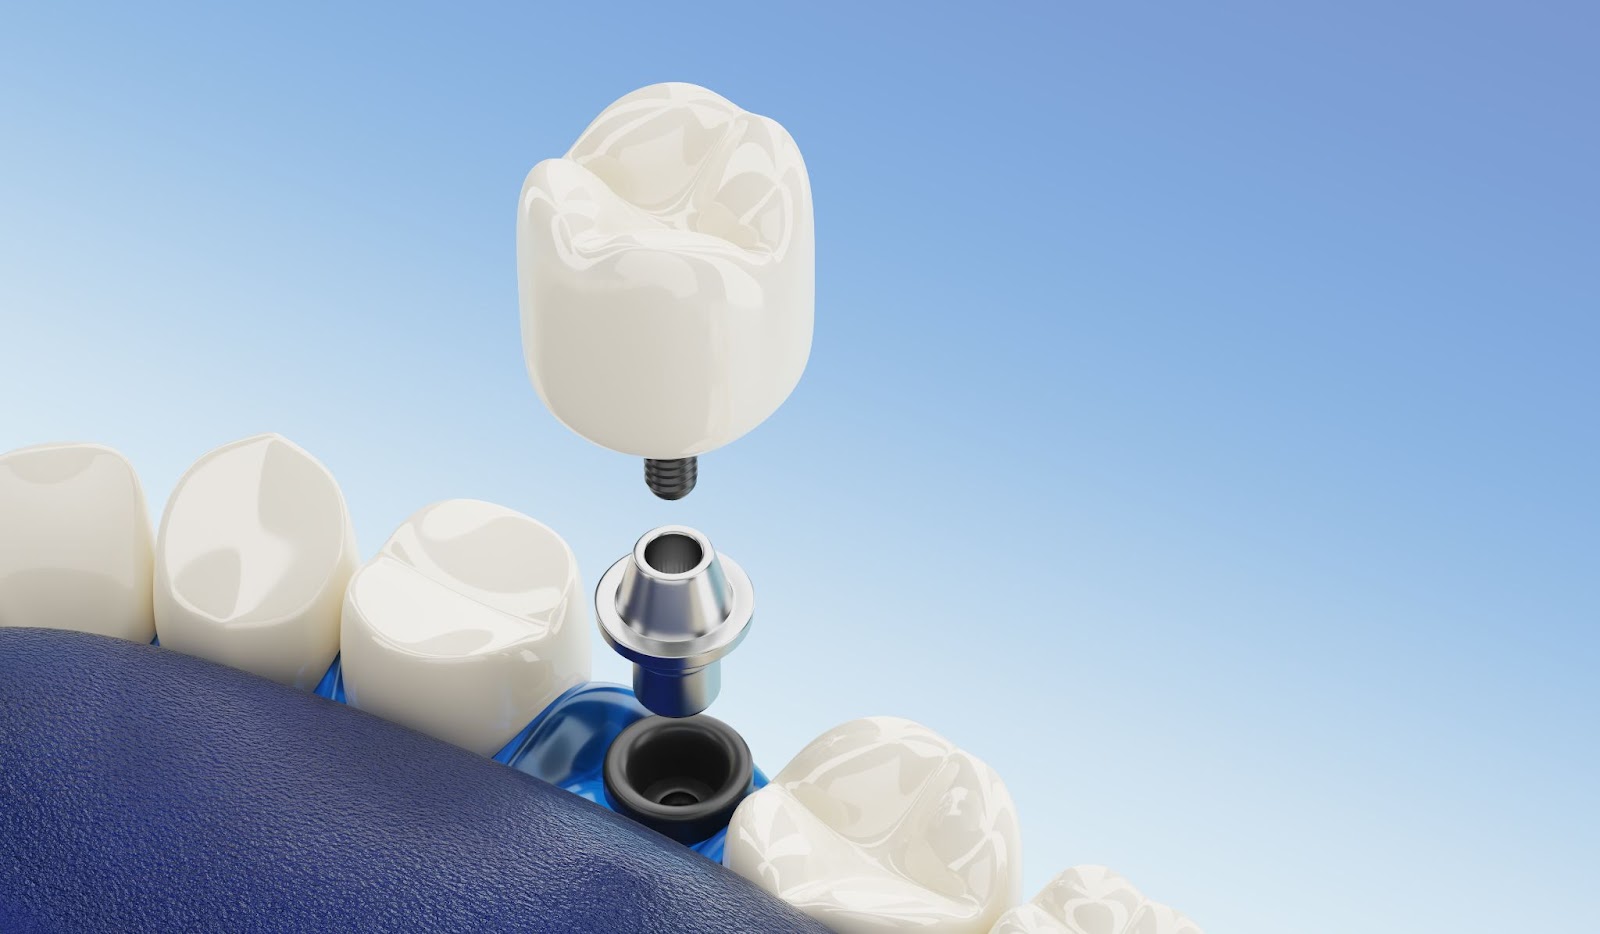 Implantet dentare zëvendësojnë  një hark të plotë të dhëmbëve që mungojnë